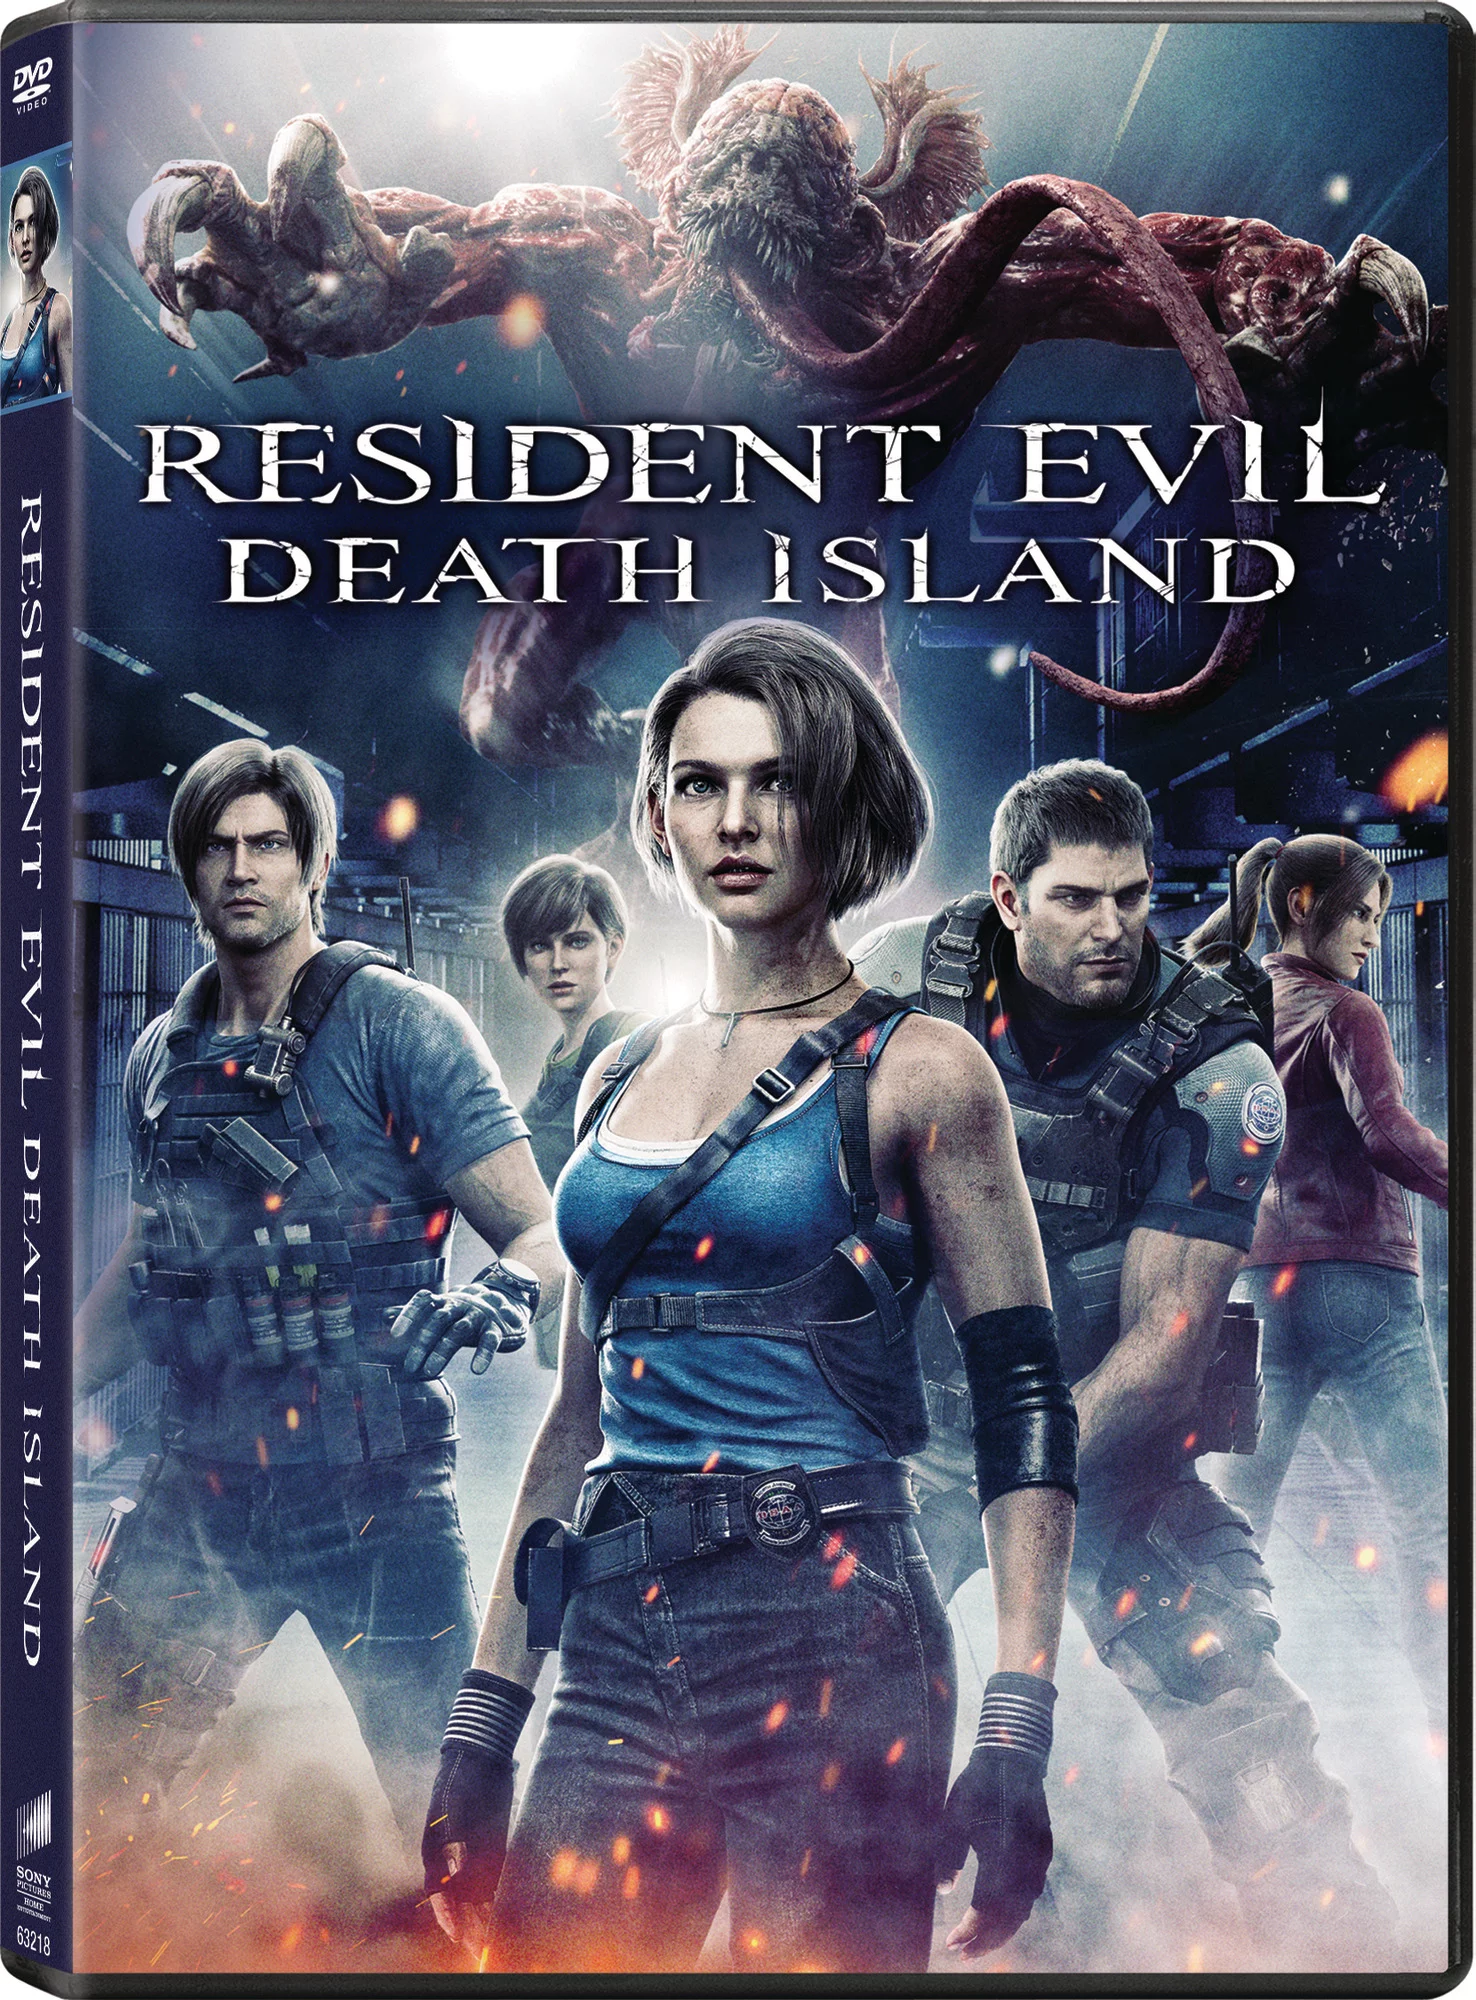 Resident Evil (film) - Wikipedia